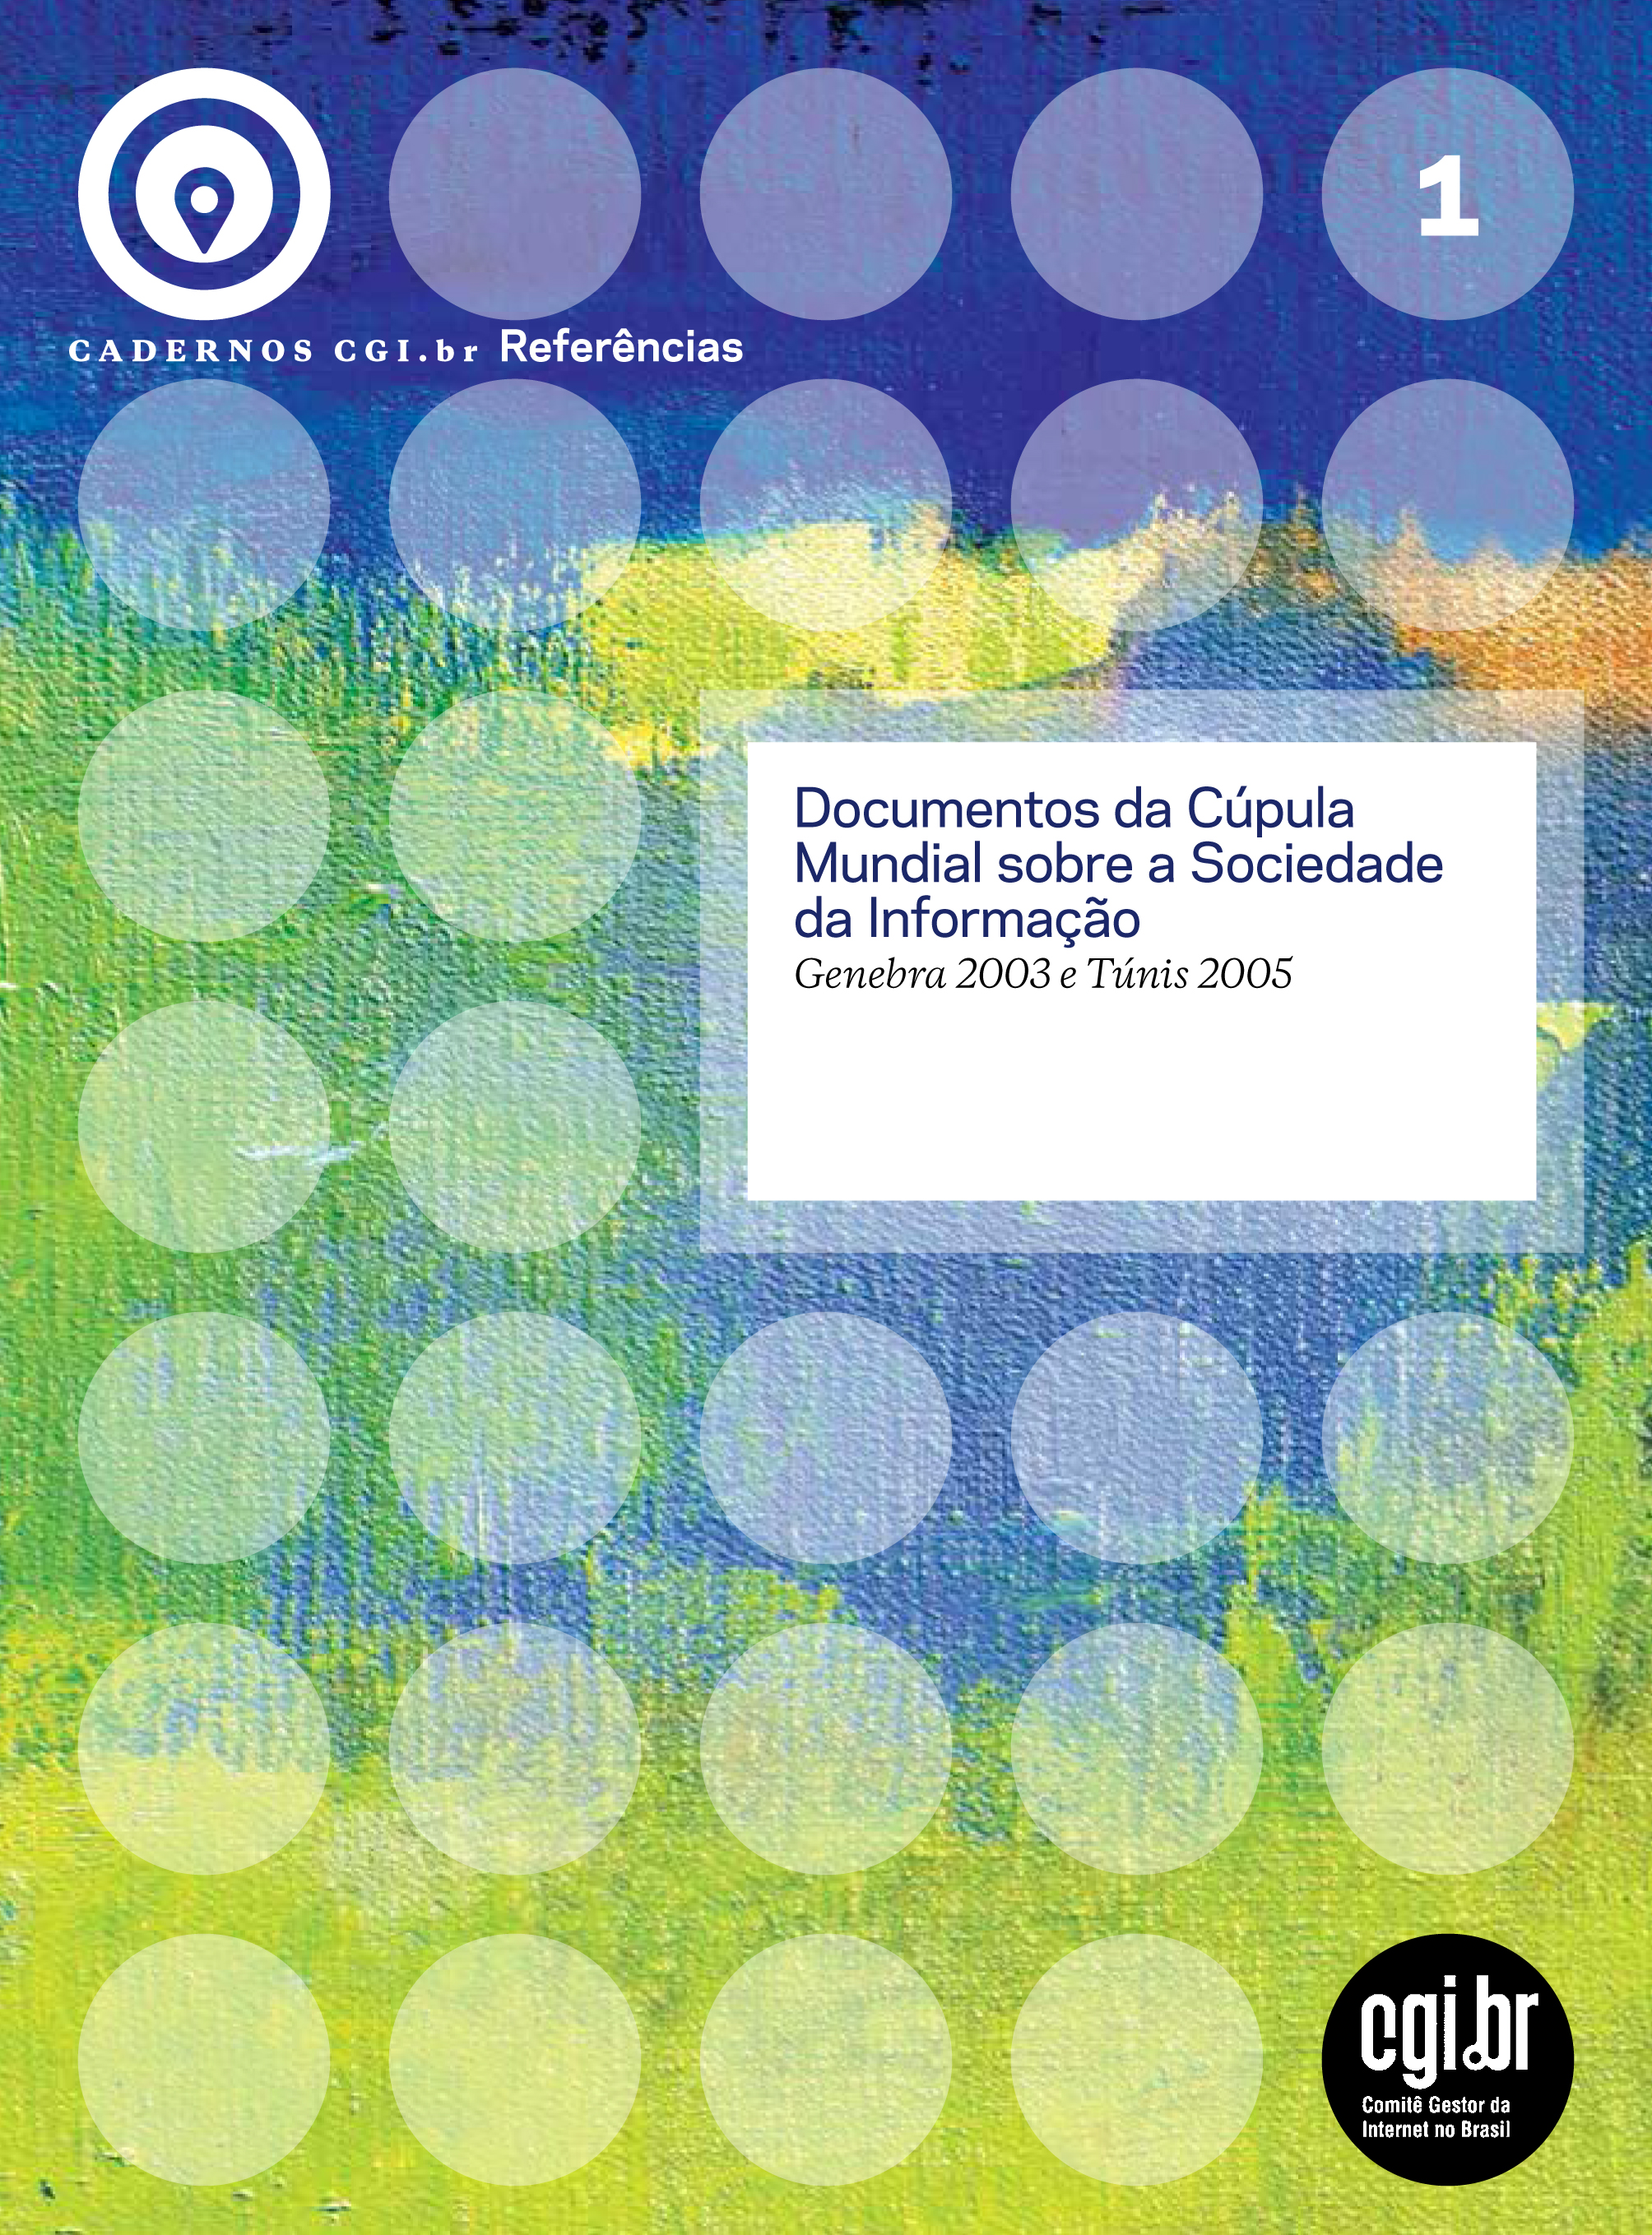 Cadernos CGI.br | Documentos da Cúpula Mundial sobre a Sociedade da Informação: Genebra 2003 e Túnis 2005